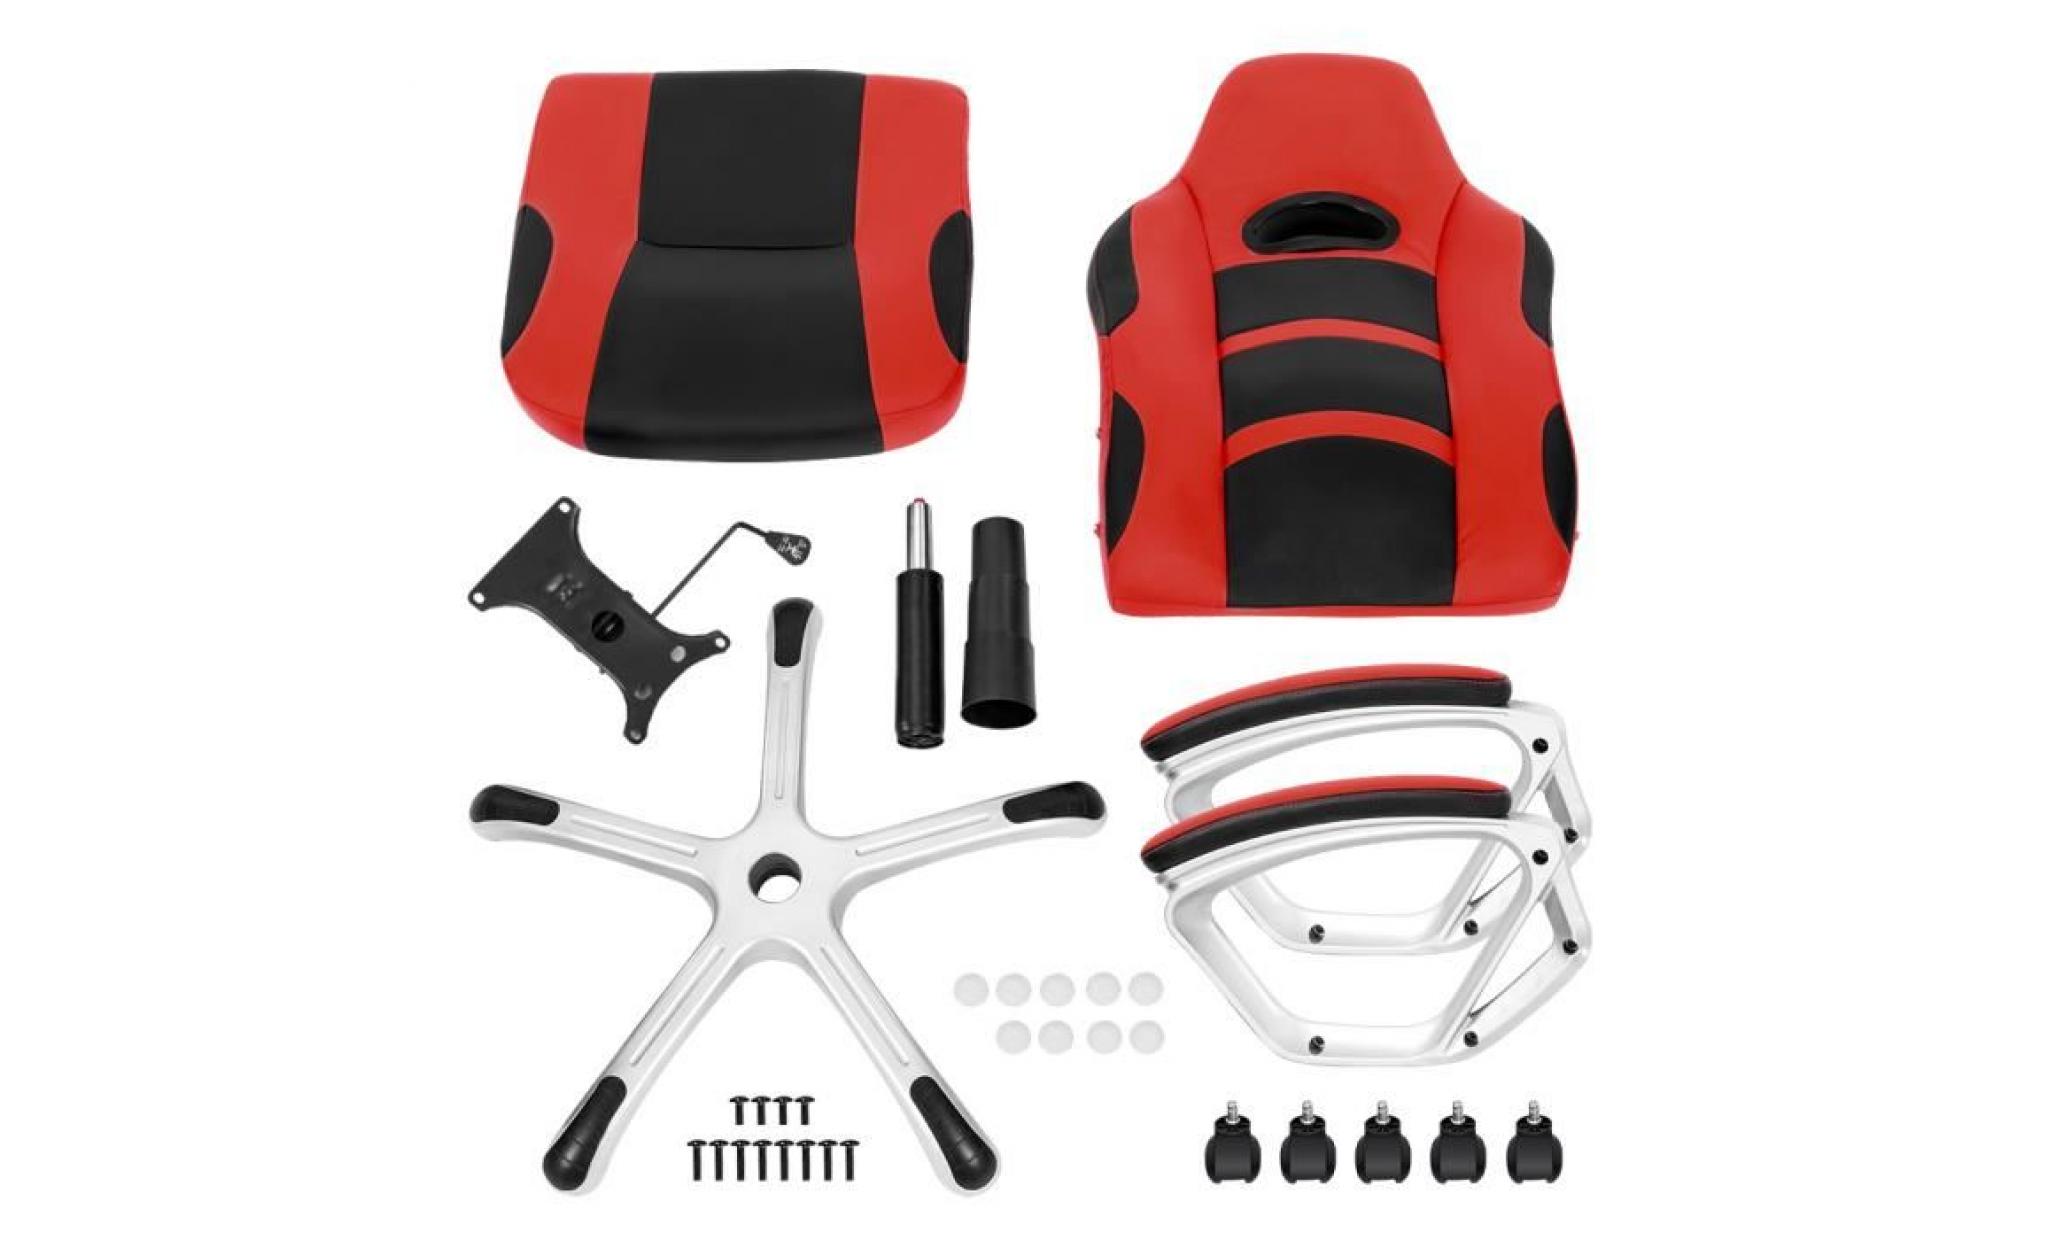 chaise de bureau langria ergonomique chaise dossier haut imitation cuir racing style jeux bureau faciles pas cher